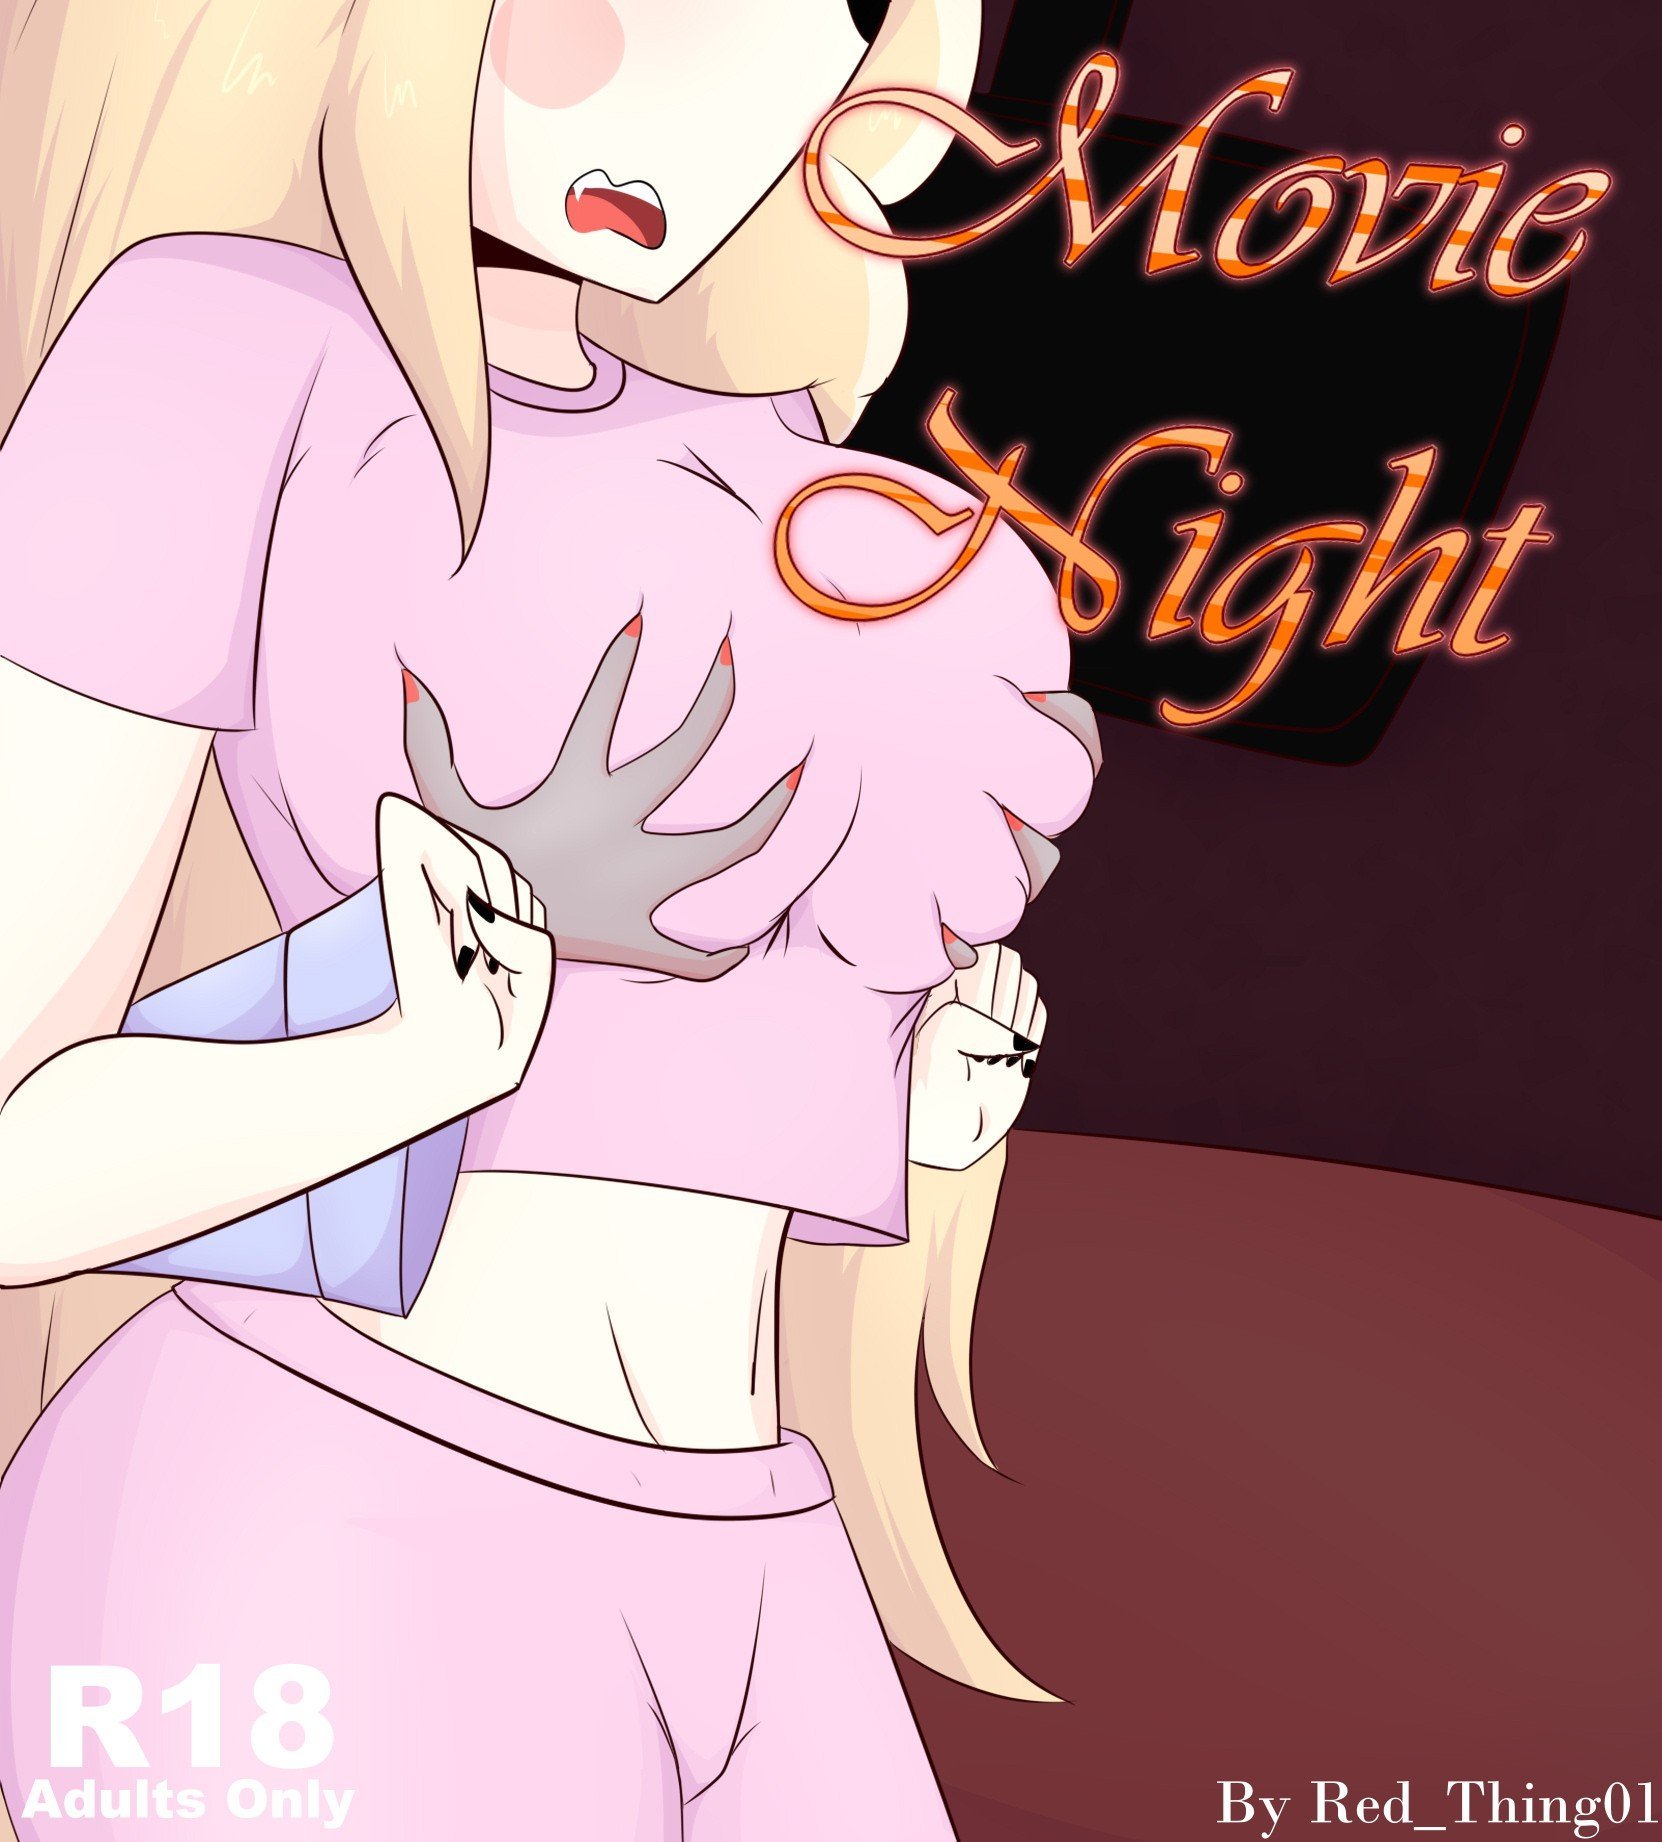 Movie Night – RedThing - 0